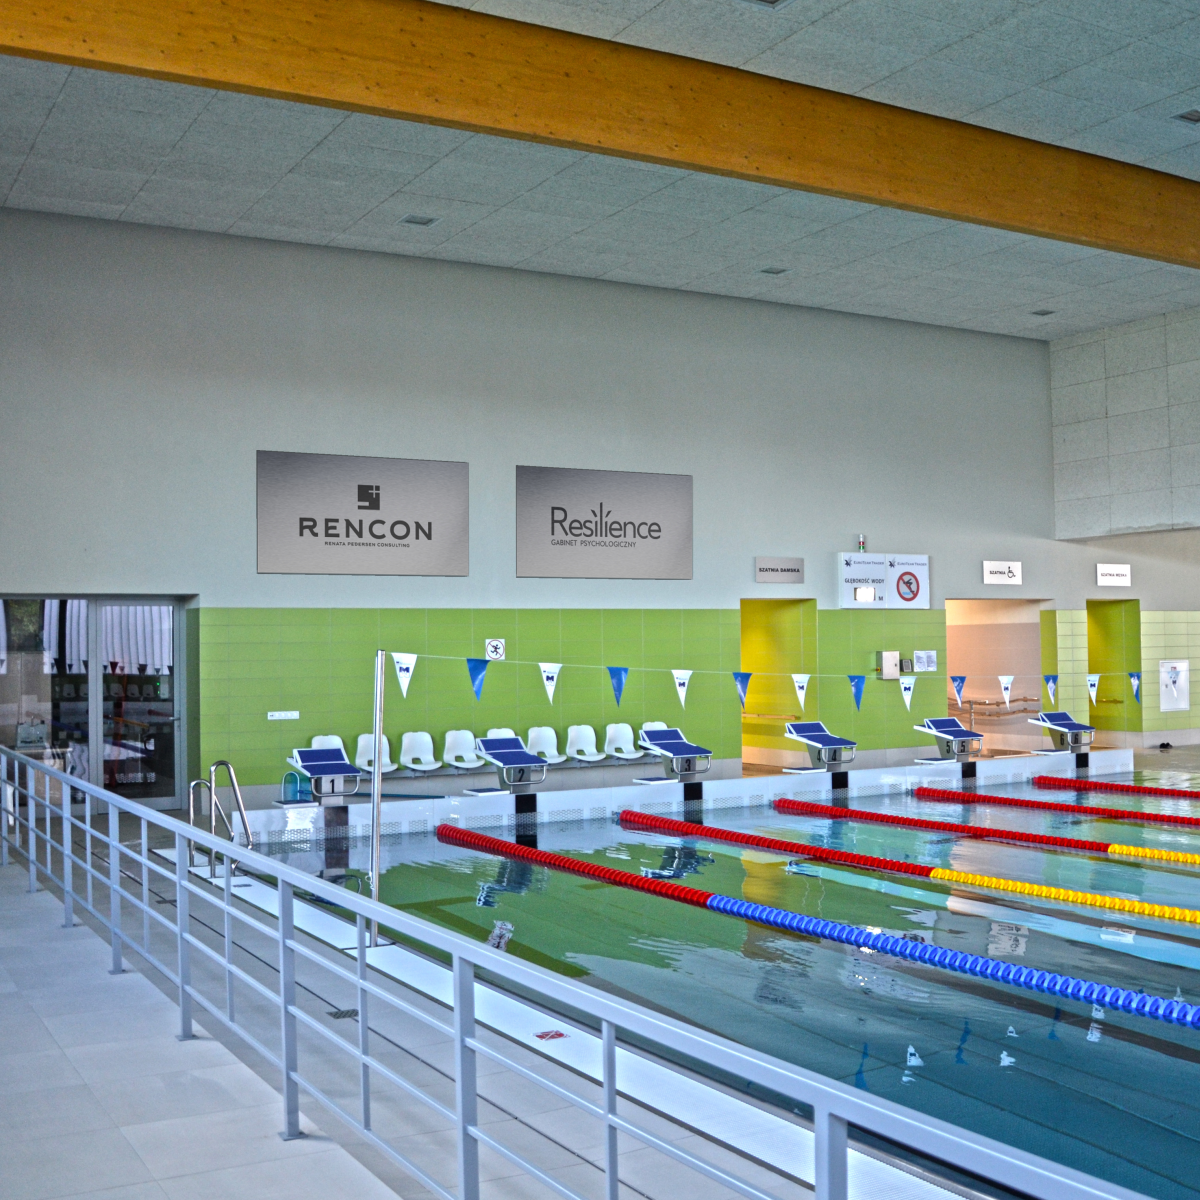 Płyta basenowa z widokiem na sześć torów pływackich. Na ścianie umieszczone są przykładowe reklamy do wynajęcia.